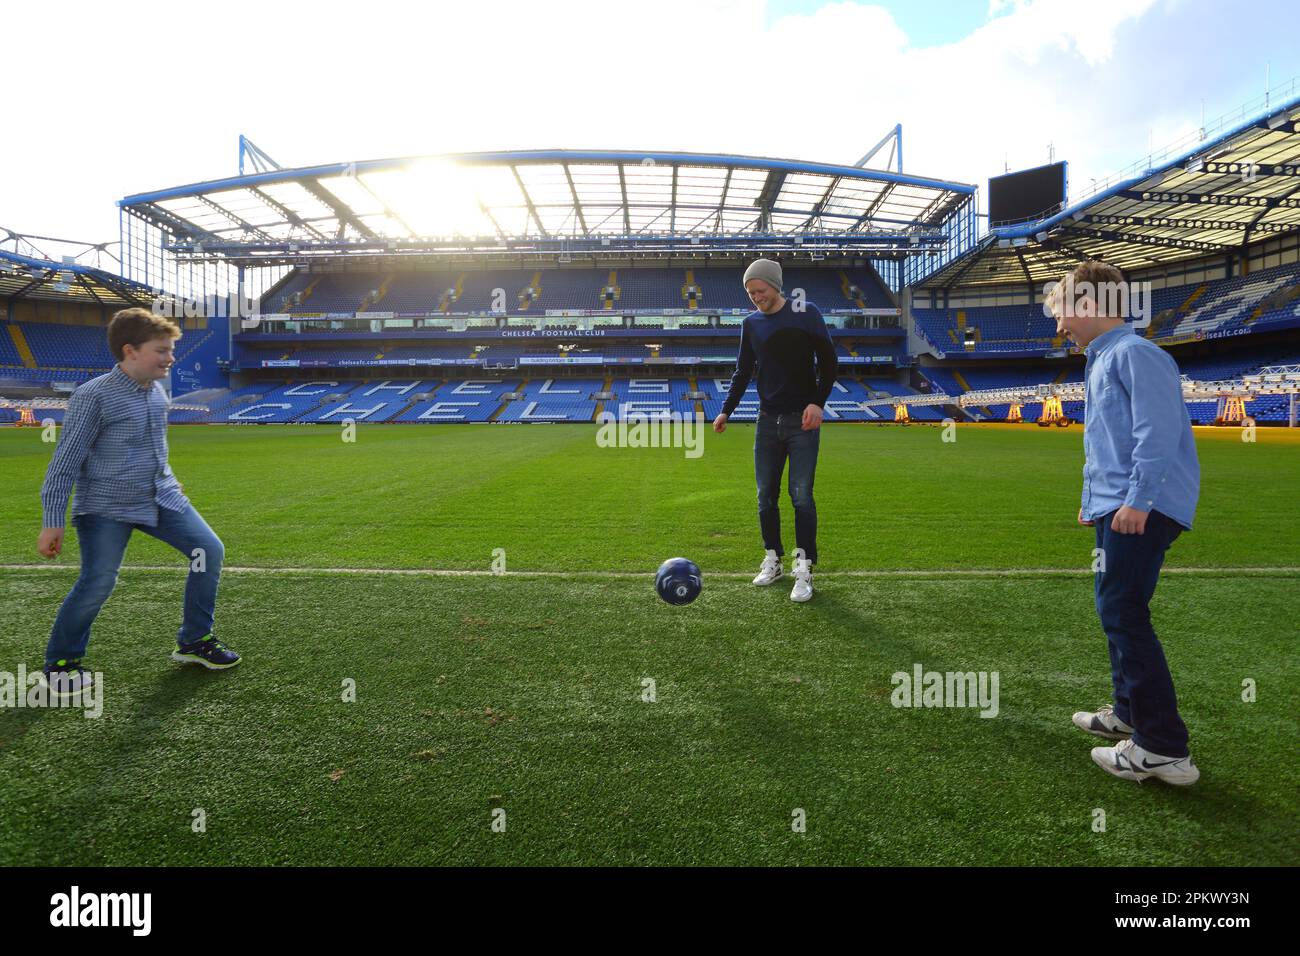 Großbritannien / London / Stamford Bridge / Premier League Club Chelsea / Andre Schuerle mit Kindern, die im Stadion spielen, 13. Februar 2014. Stockfoto